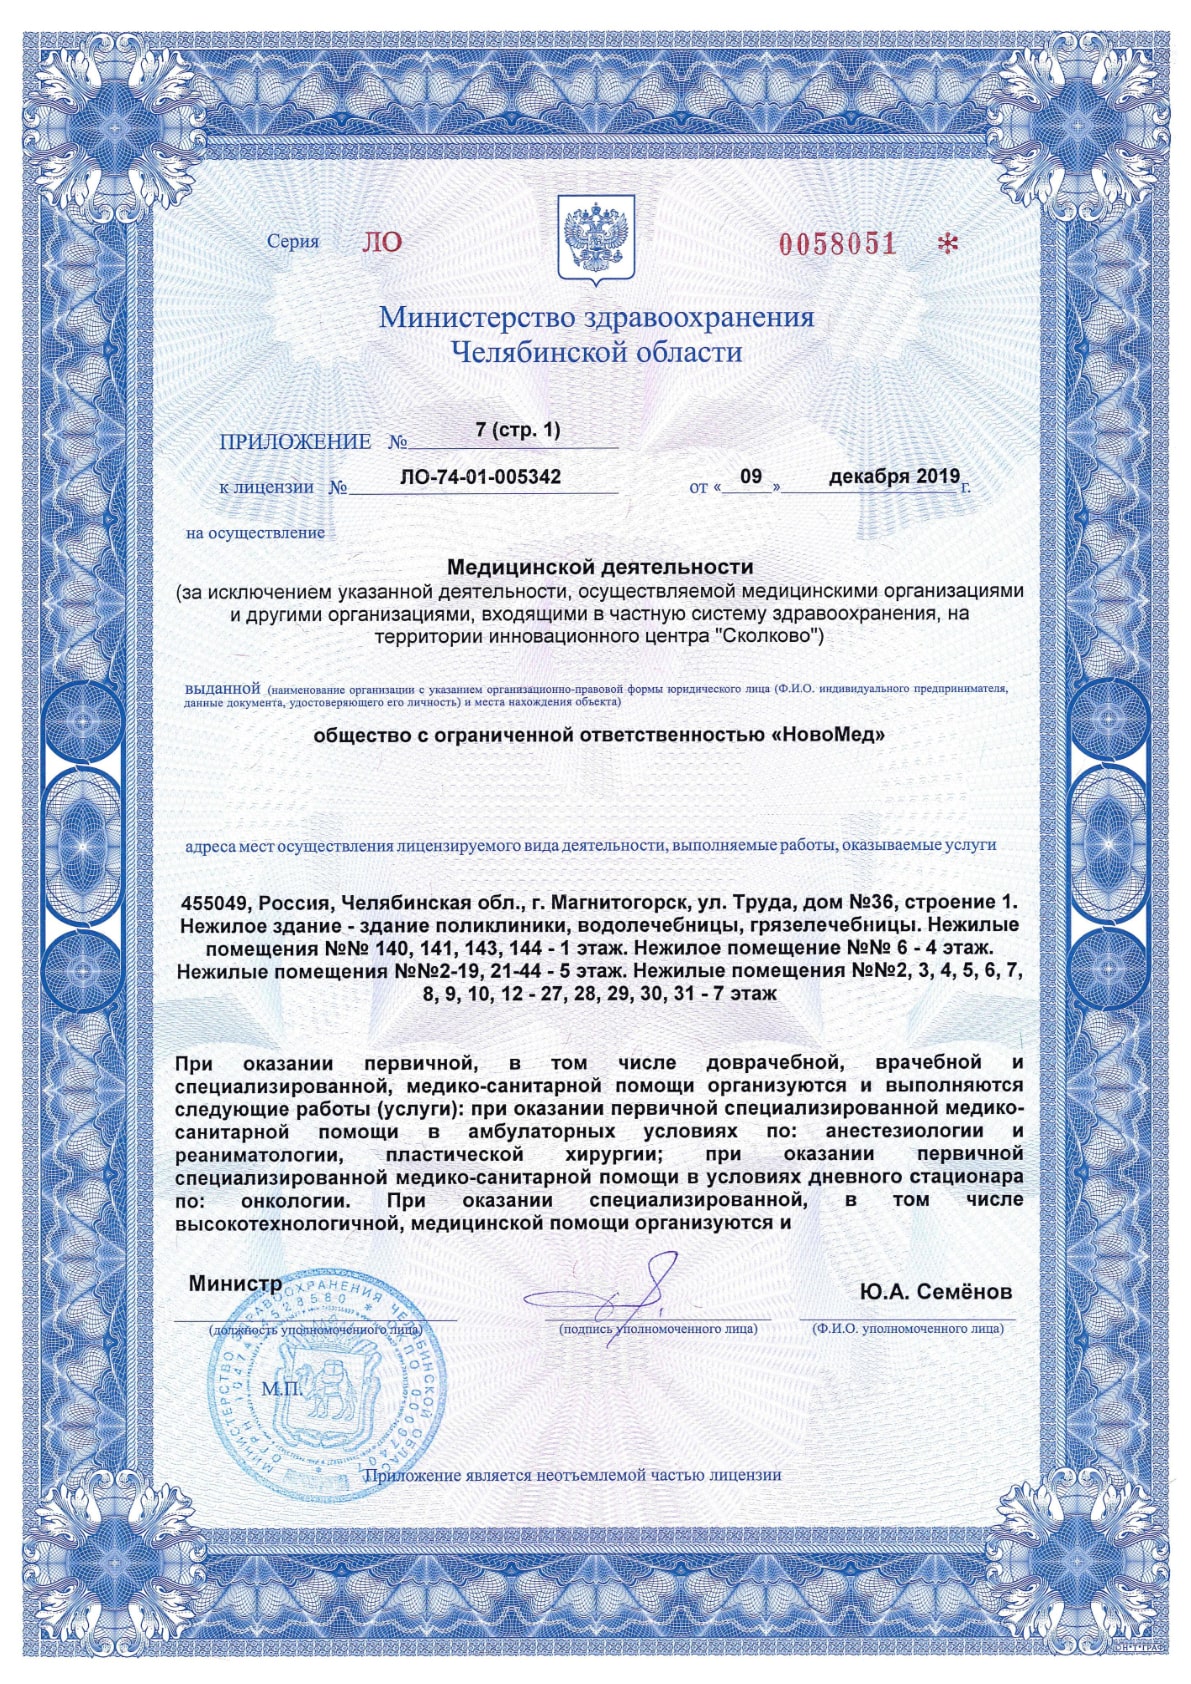 Приложение №7 к лицензии ЛО-74-01-005342, лист 1